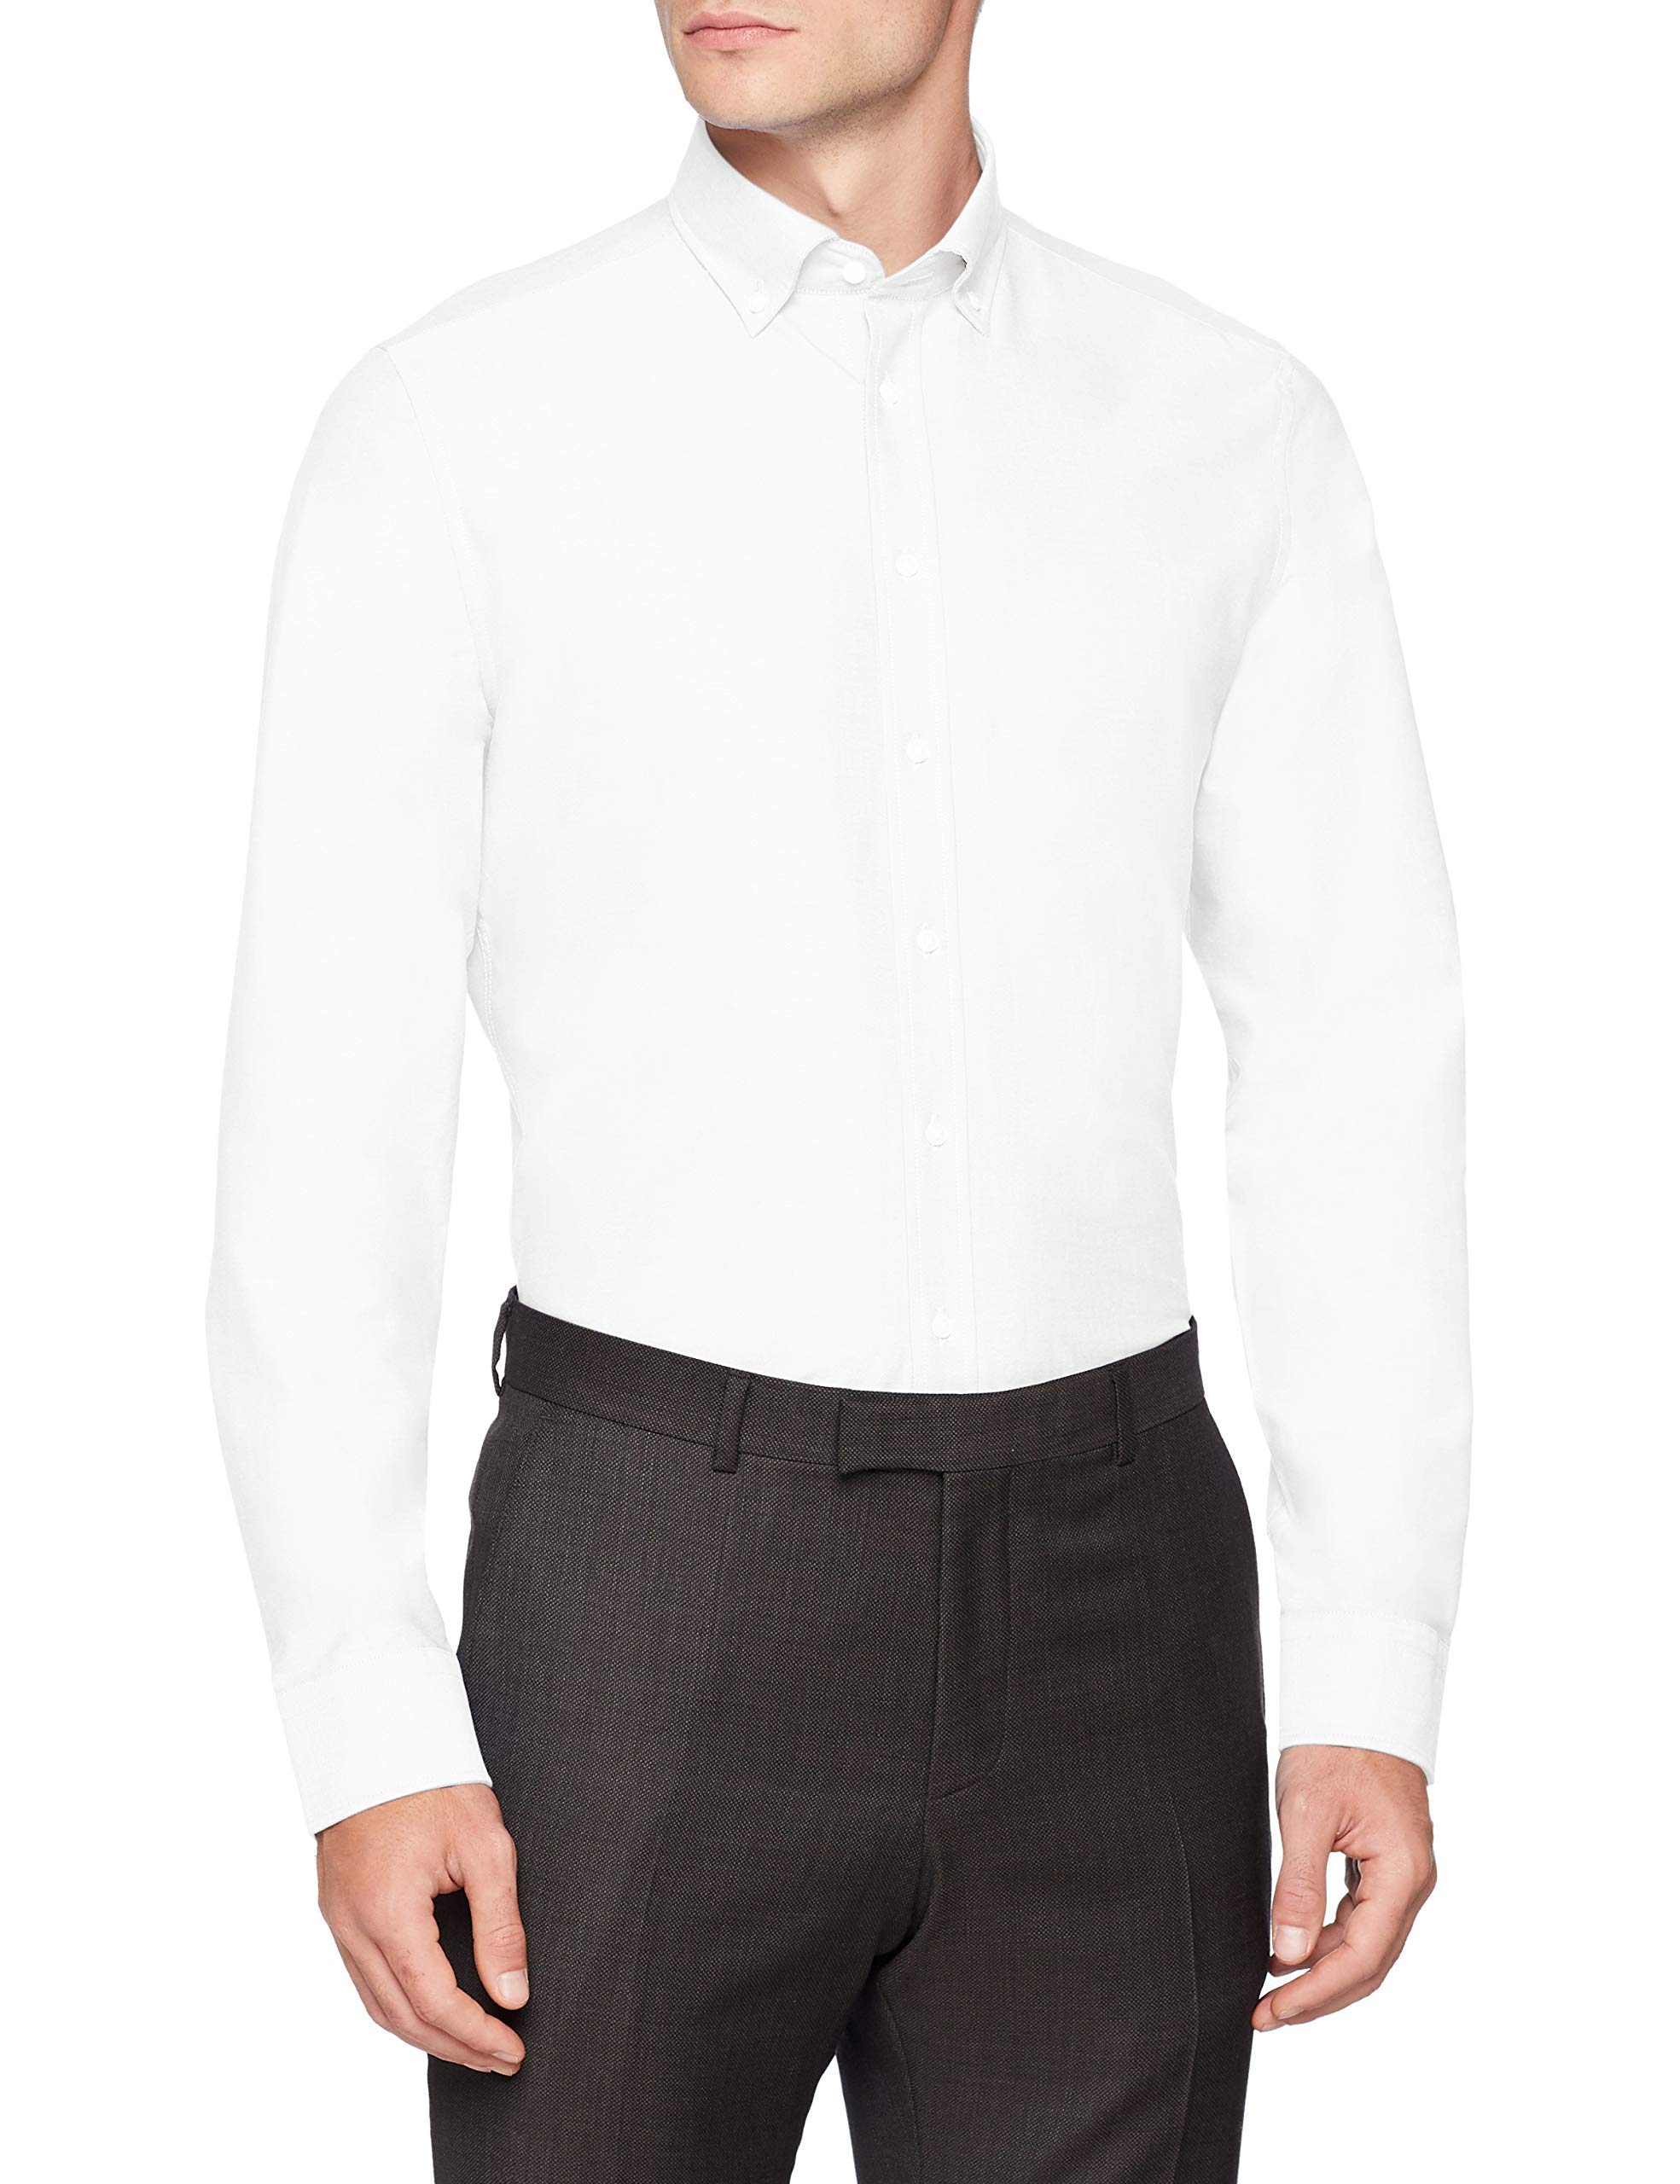 Seidensticker Herren Slim Langarm mit Button-down Kragen Soft Uni Smart Business Businesshemd, Weiß (Weiß 1), 40